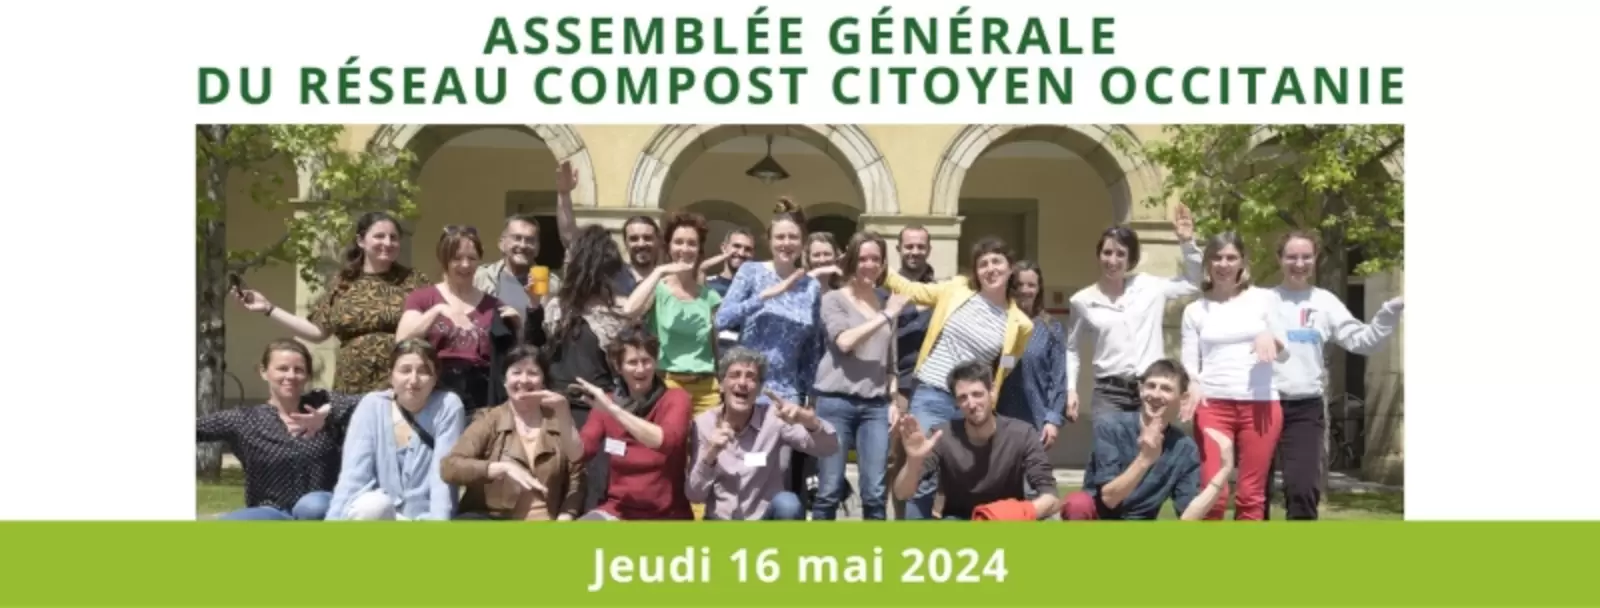 Assemblée Générale du Réseau Compost Citoyen Occitanie | 16 mai | Millau (12)